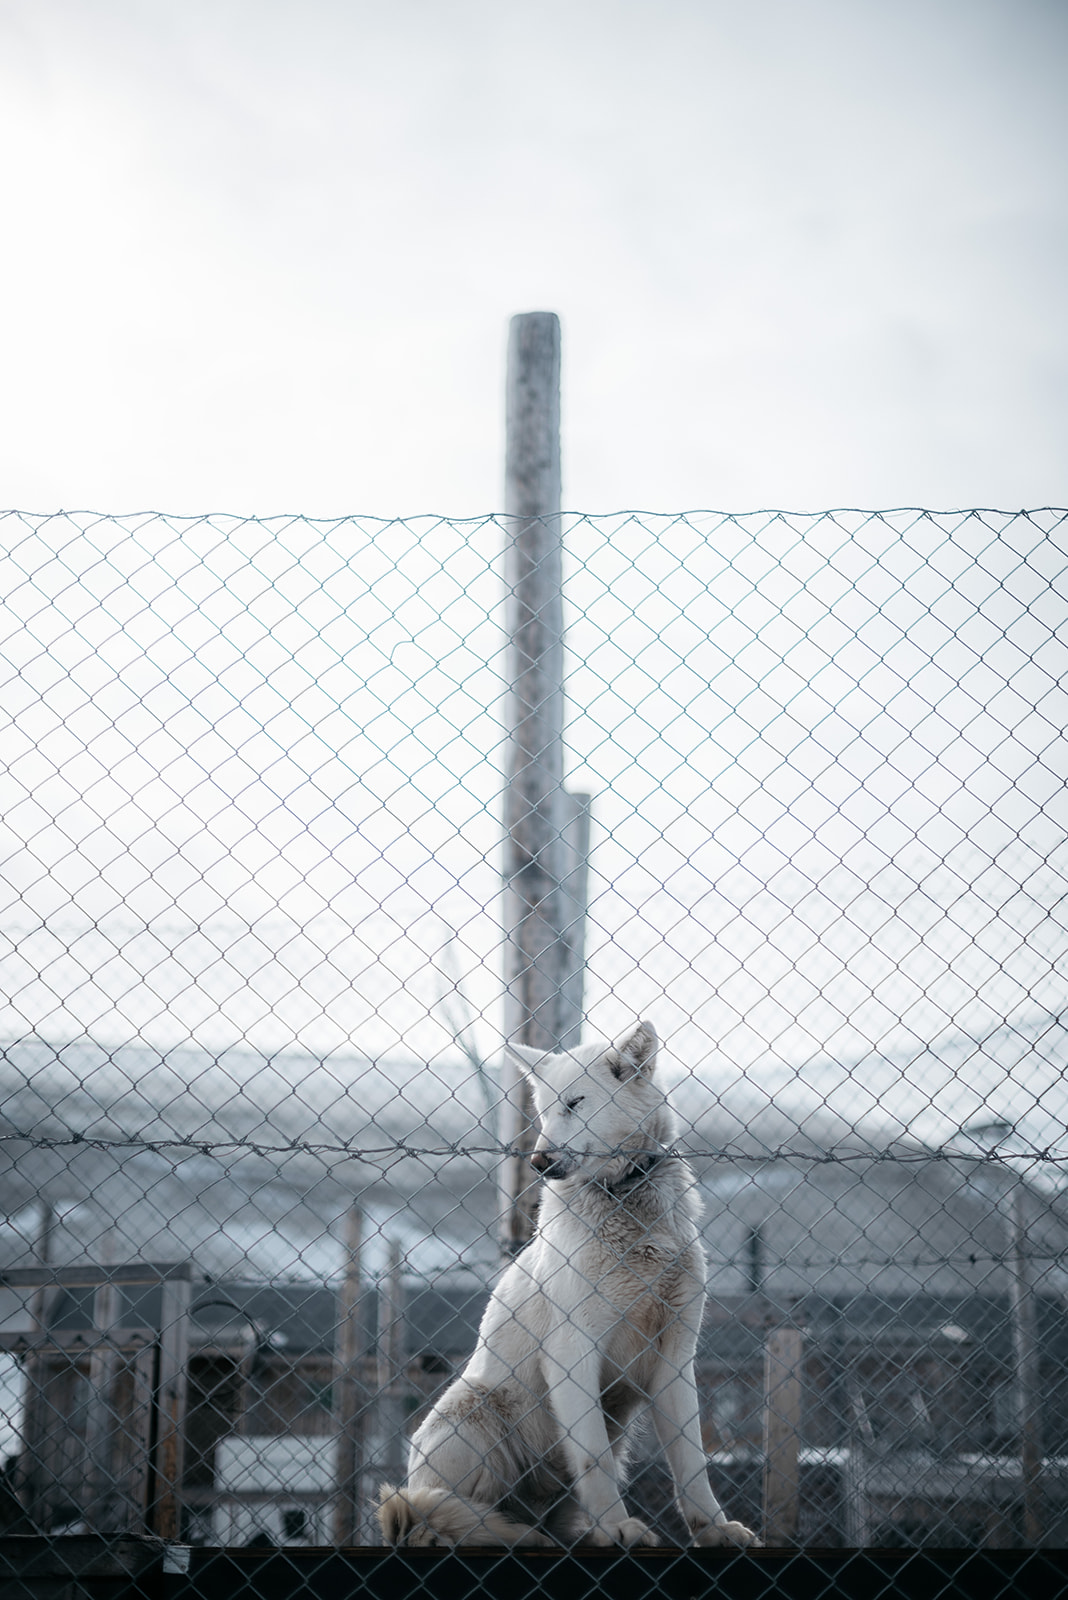 sled dog sitting outside on Svalbard